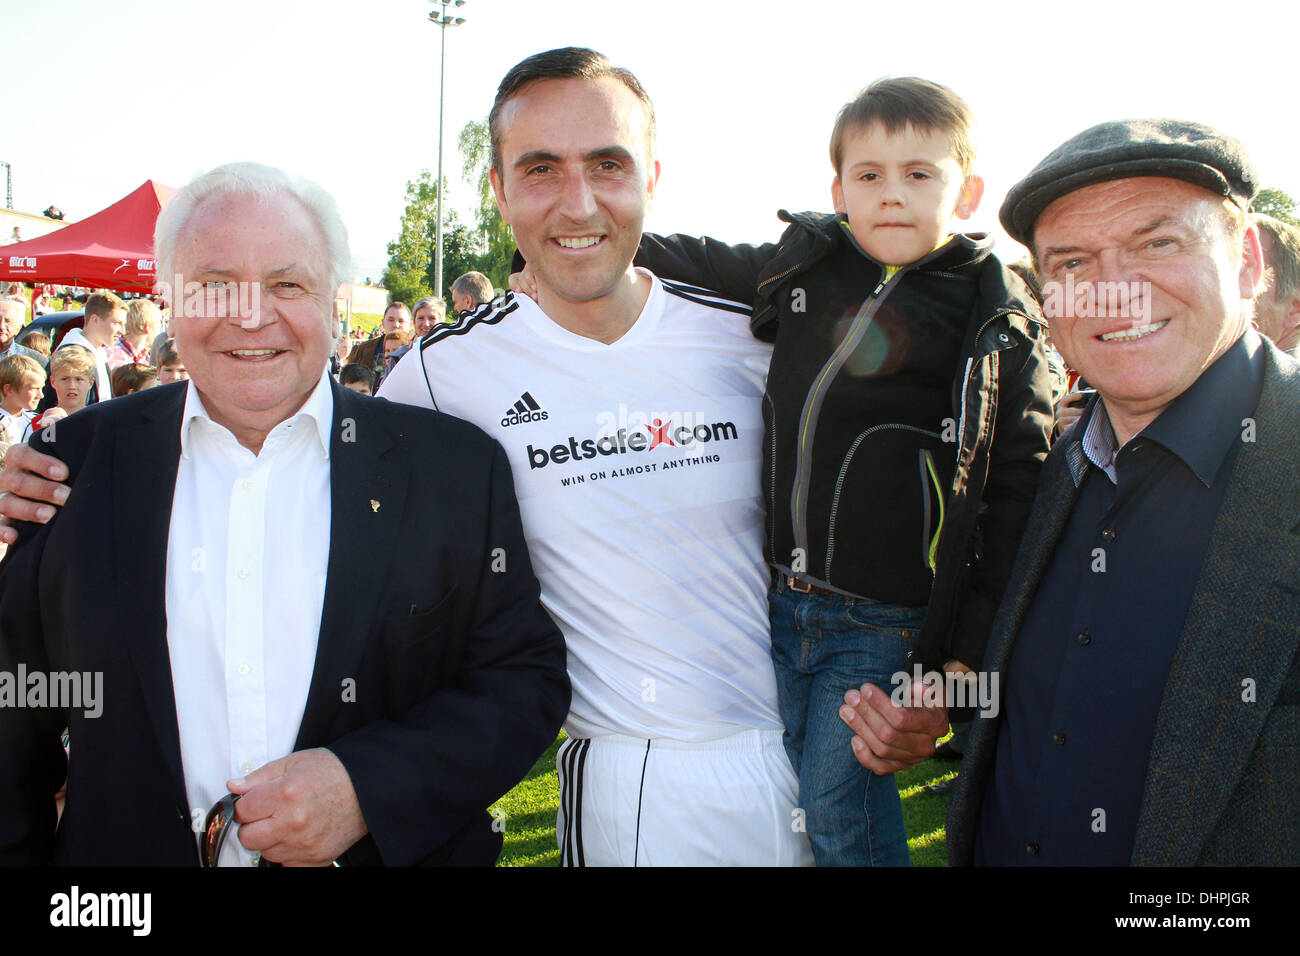 Eckart Witzigmann, Fabrice Kieffer avec son fils, invité Première Liga match de football de bienfaisance tenue à Jahnstadium Rosenheim, Allemagne - 14.05.12 Banque D'Images